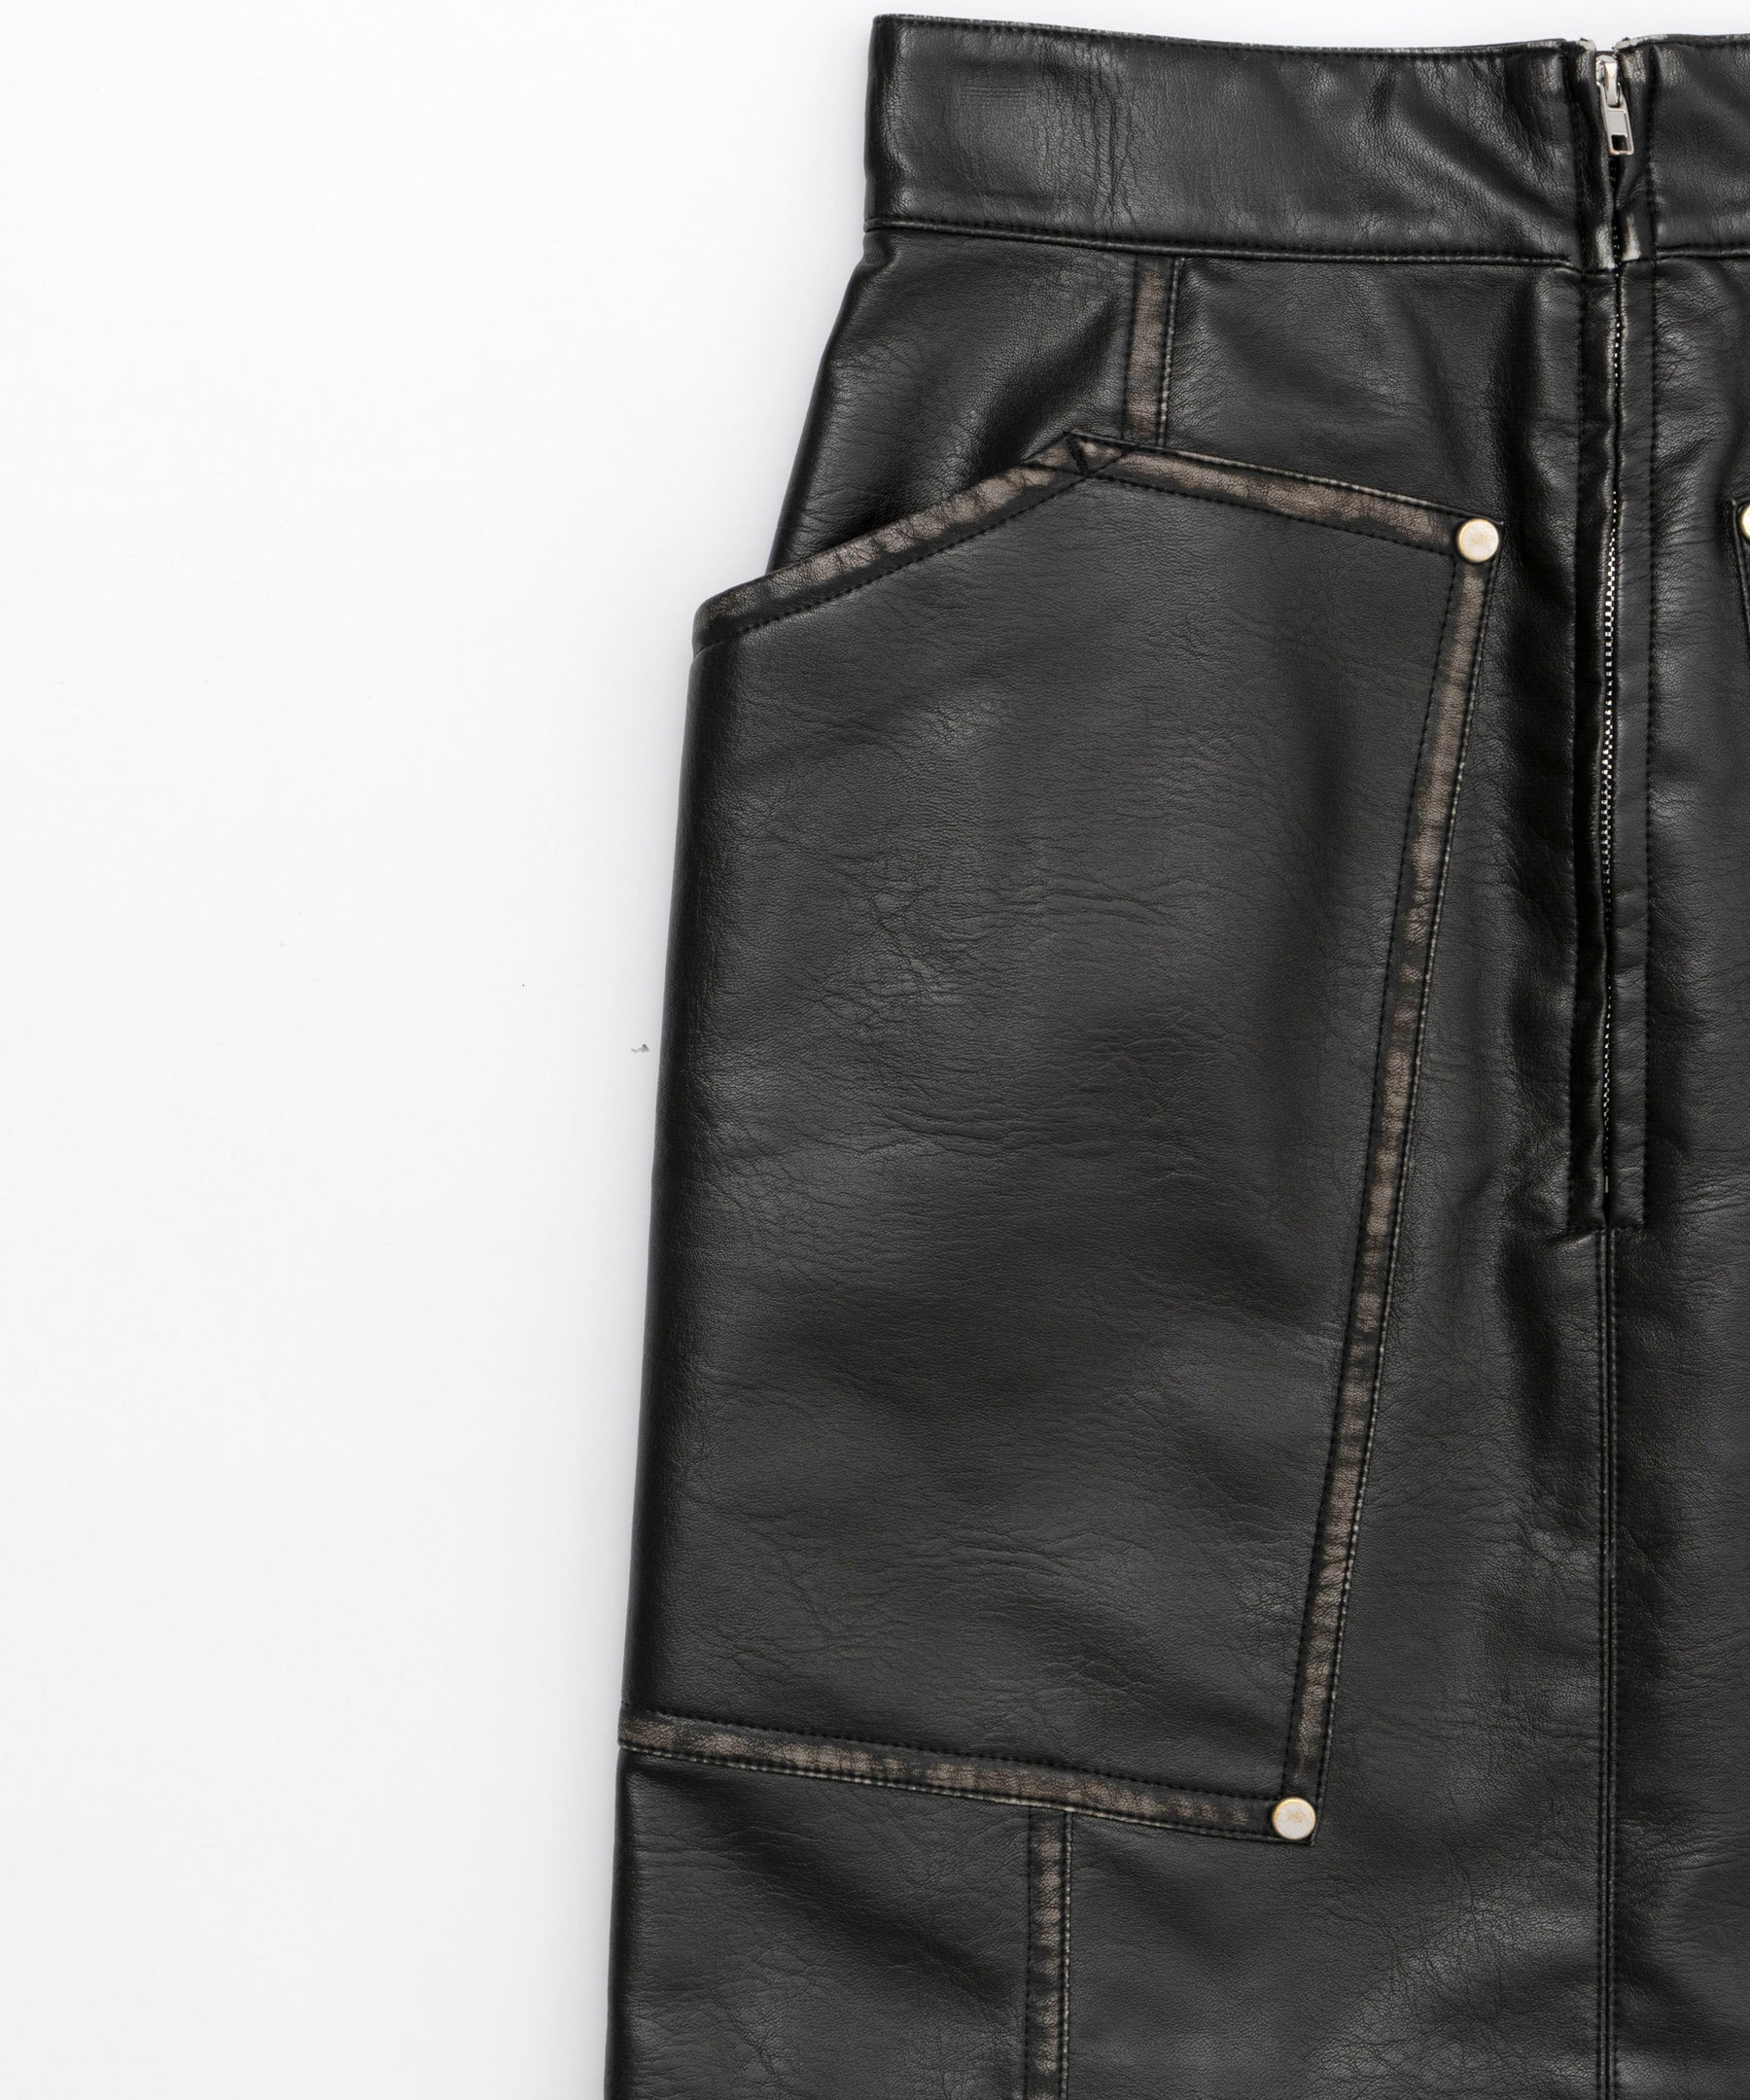 【SALE】Fake Leather Mini Skirt